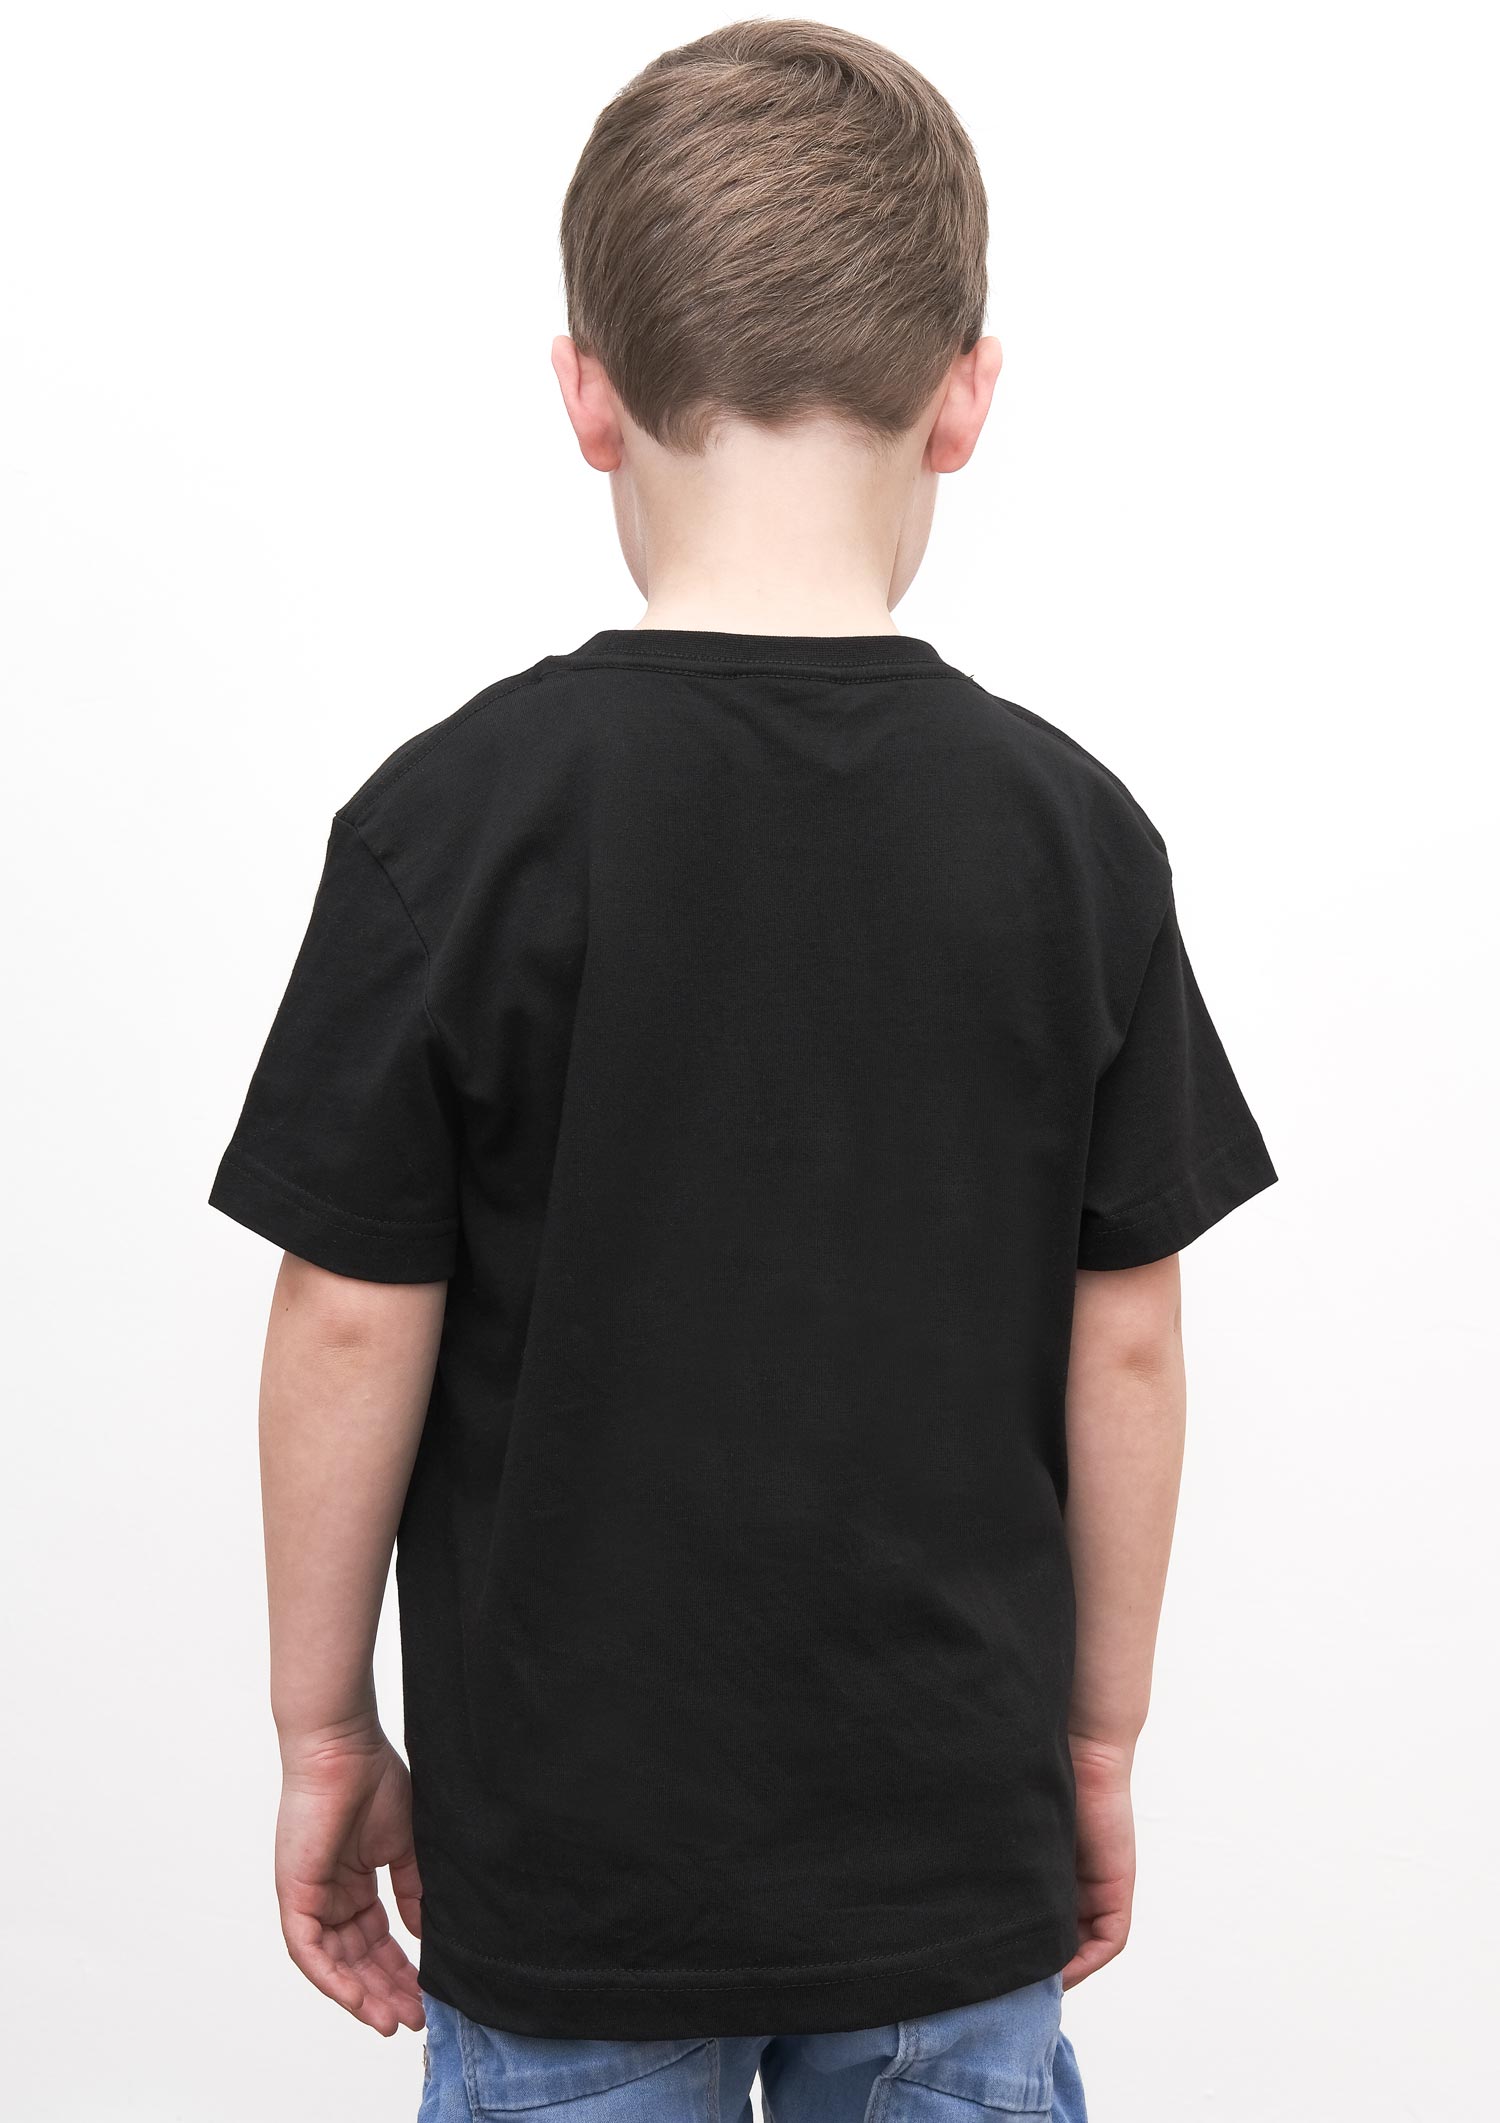 Kinder T-Shirt Glitzer schwarz-grün